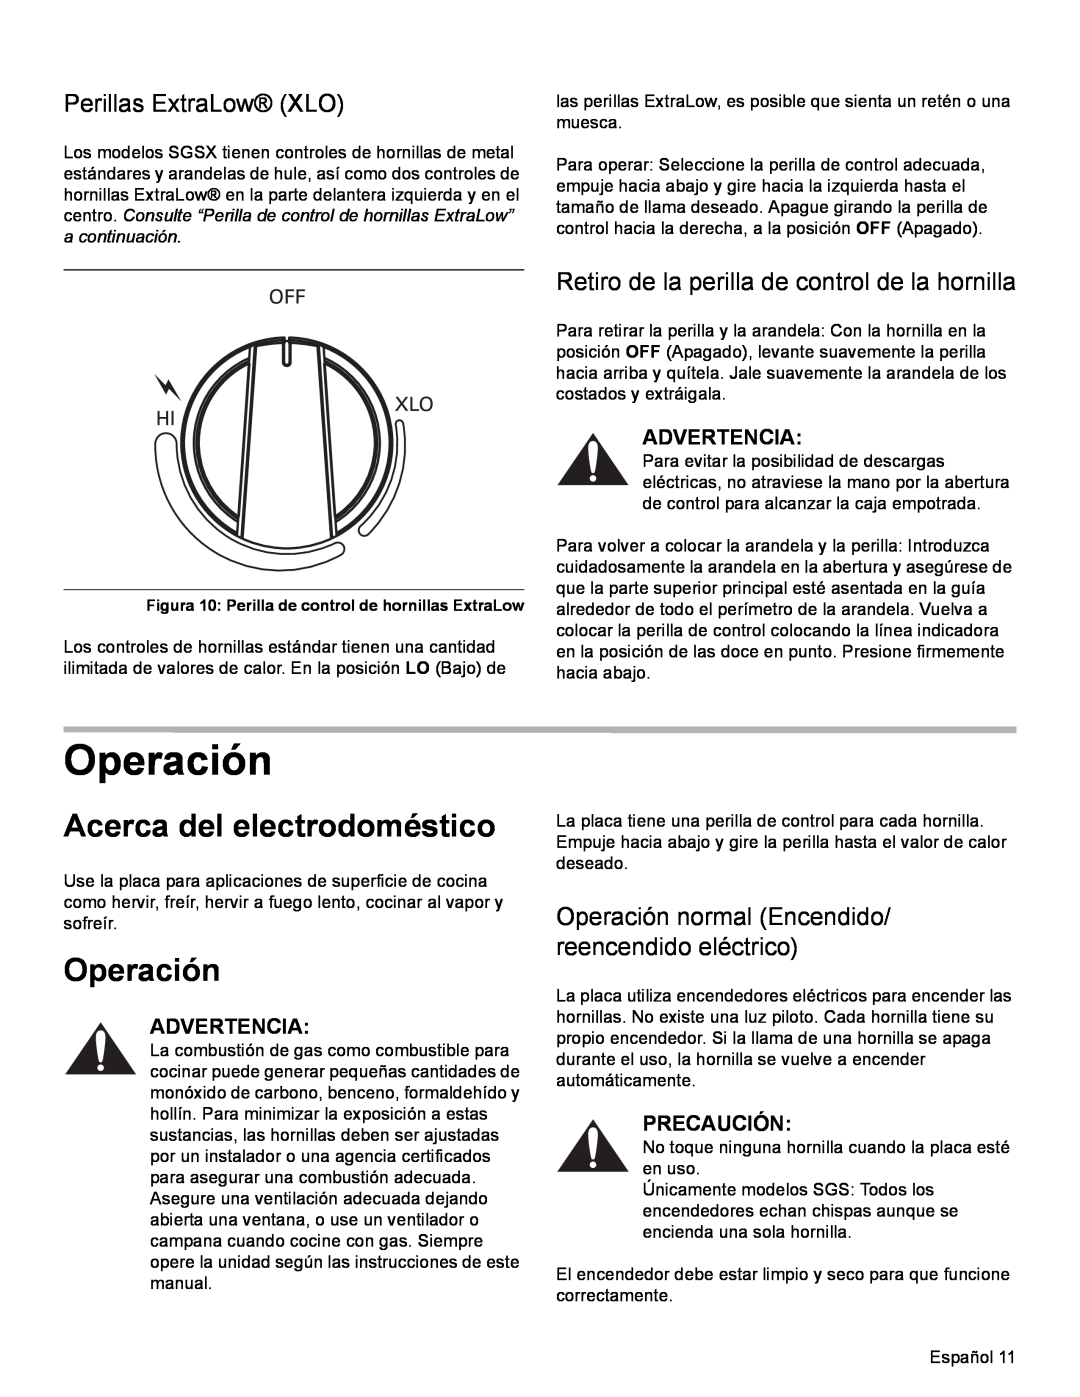 Bosch Appliances SGSX manual Operación, Acerca del electrodoméstico, Perillas ExtraLow XLO, Advertencia, Precaución 